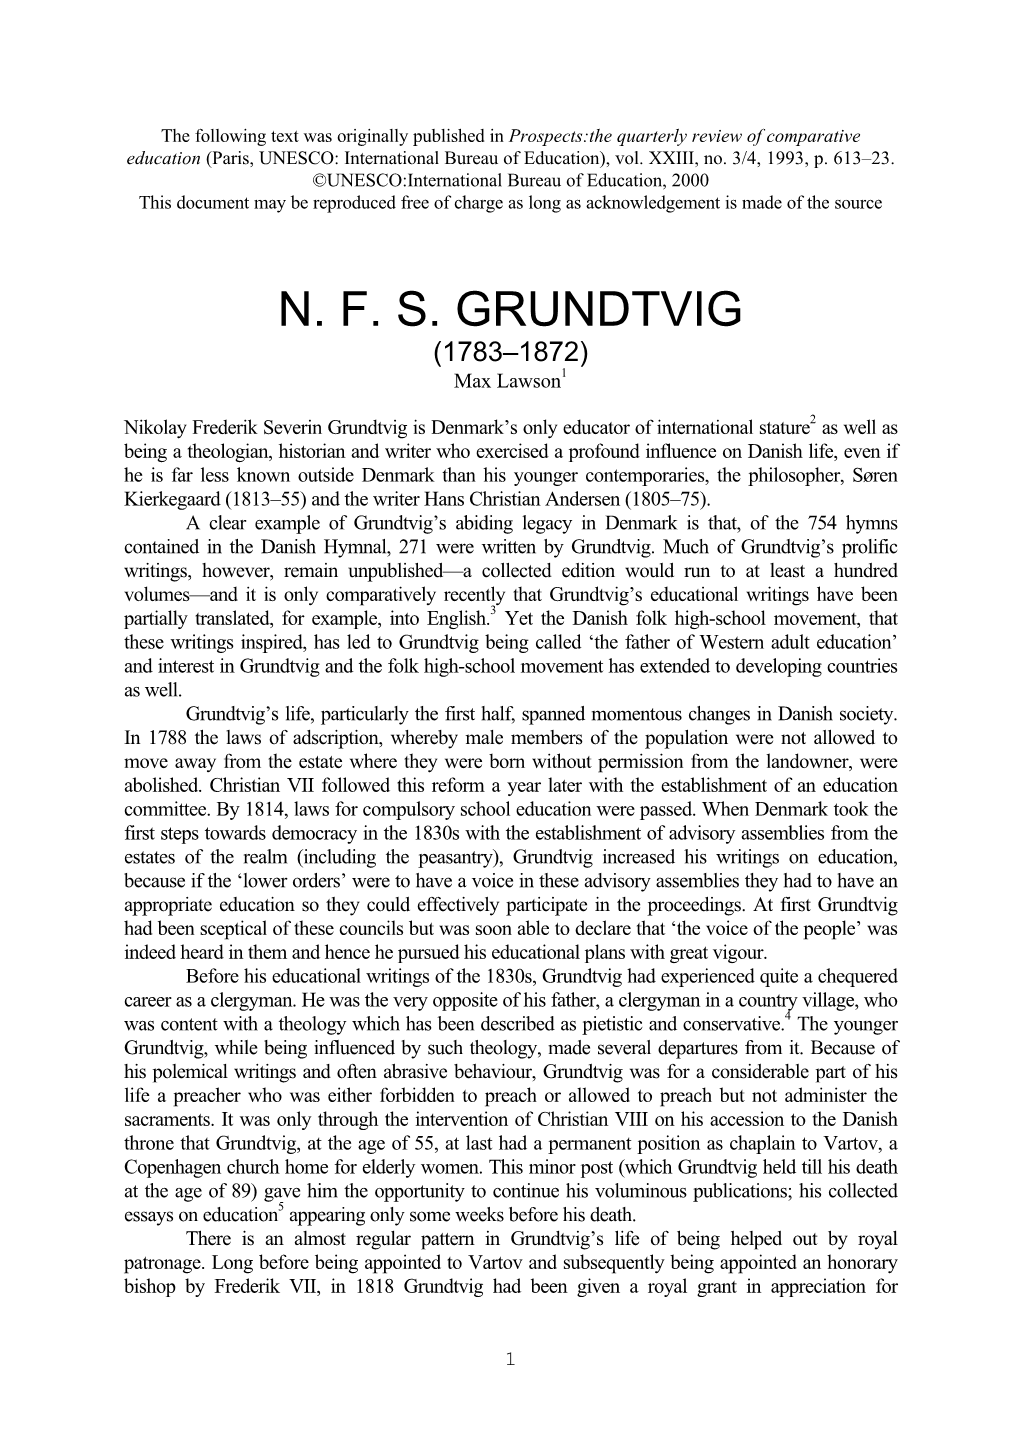 N.F.S. Grundtvig Pedagogiske Tanker [The School for Life: Studies on N